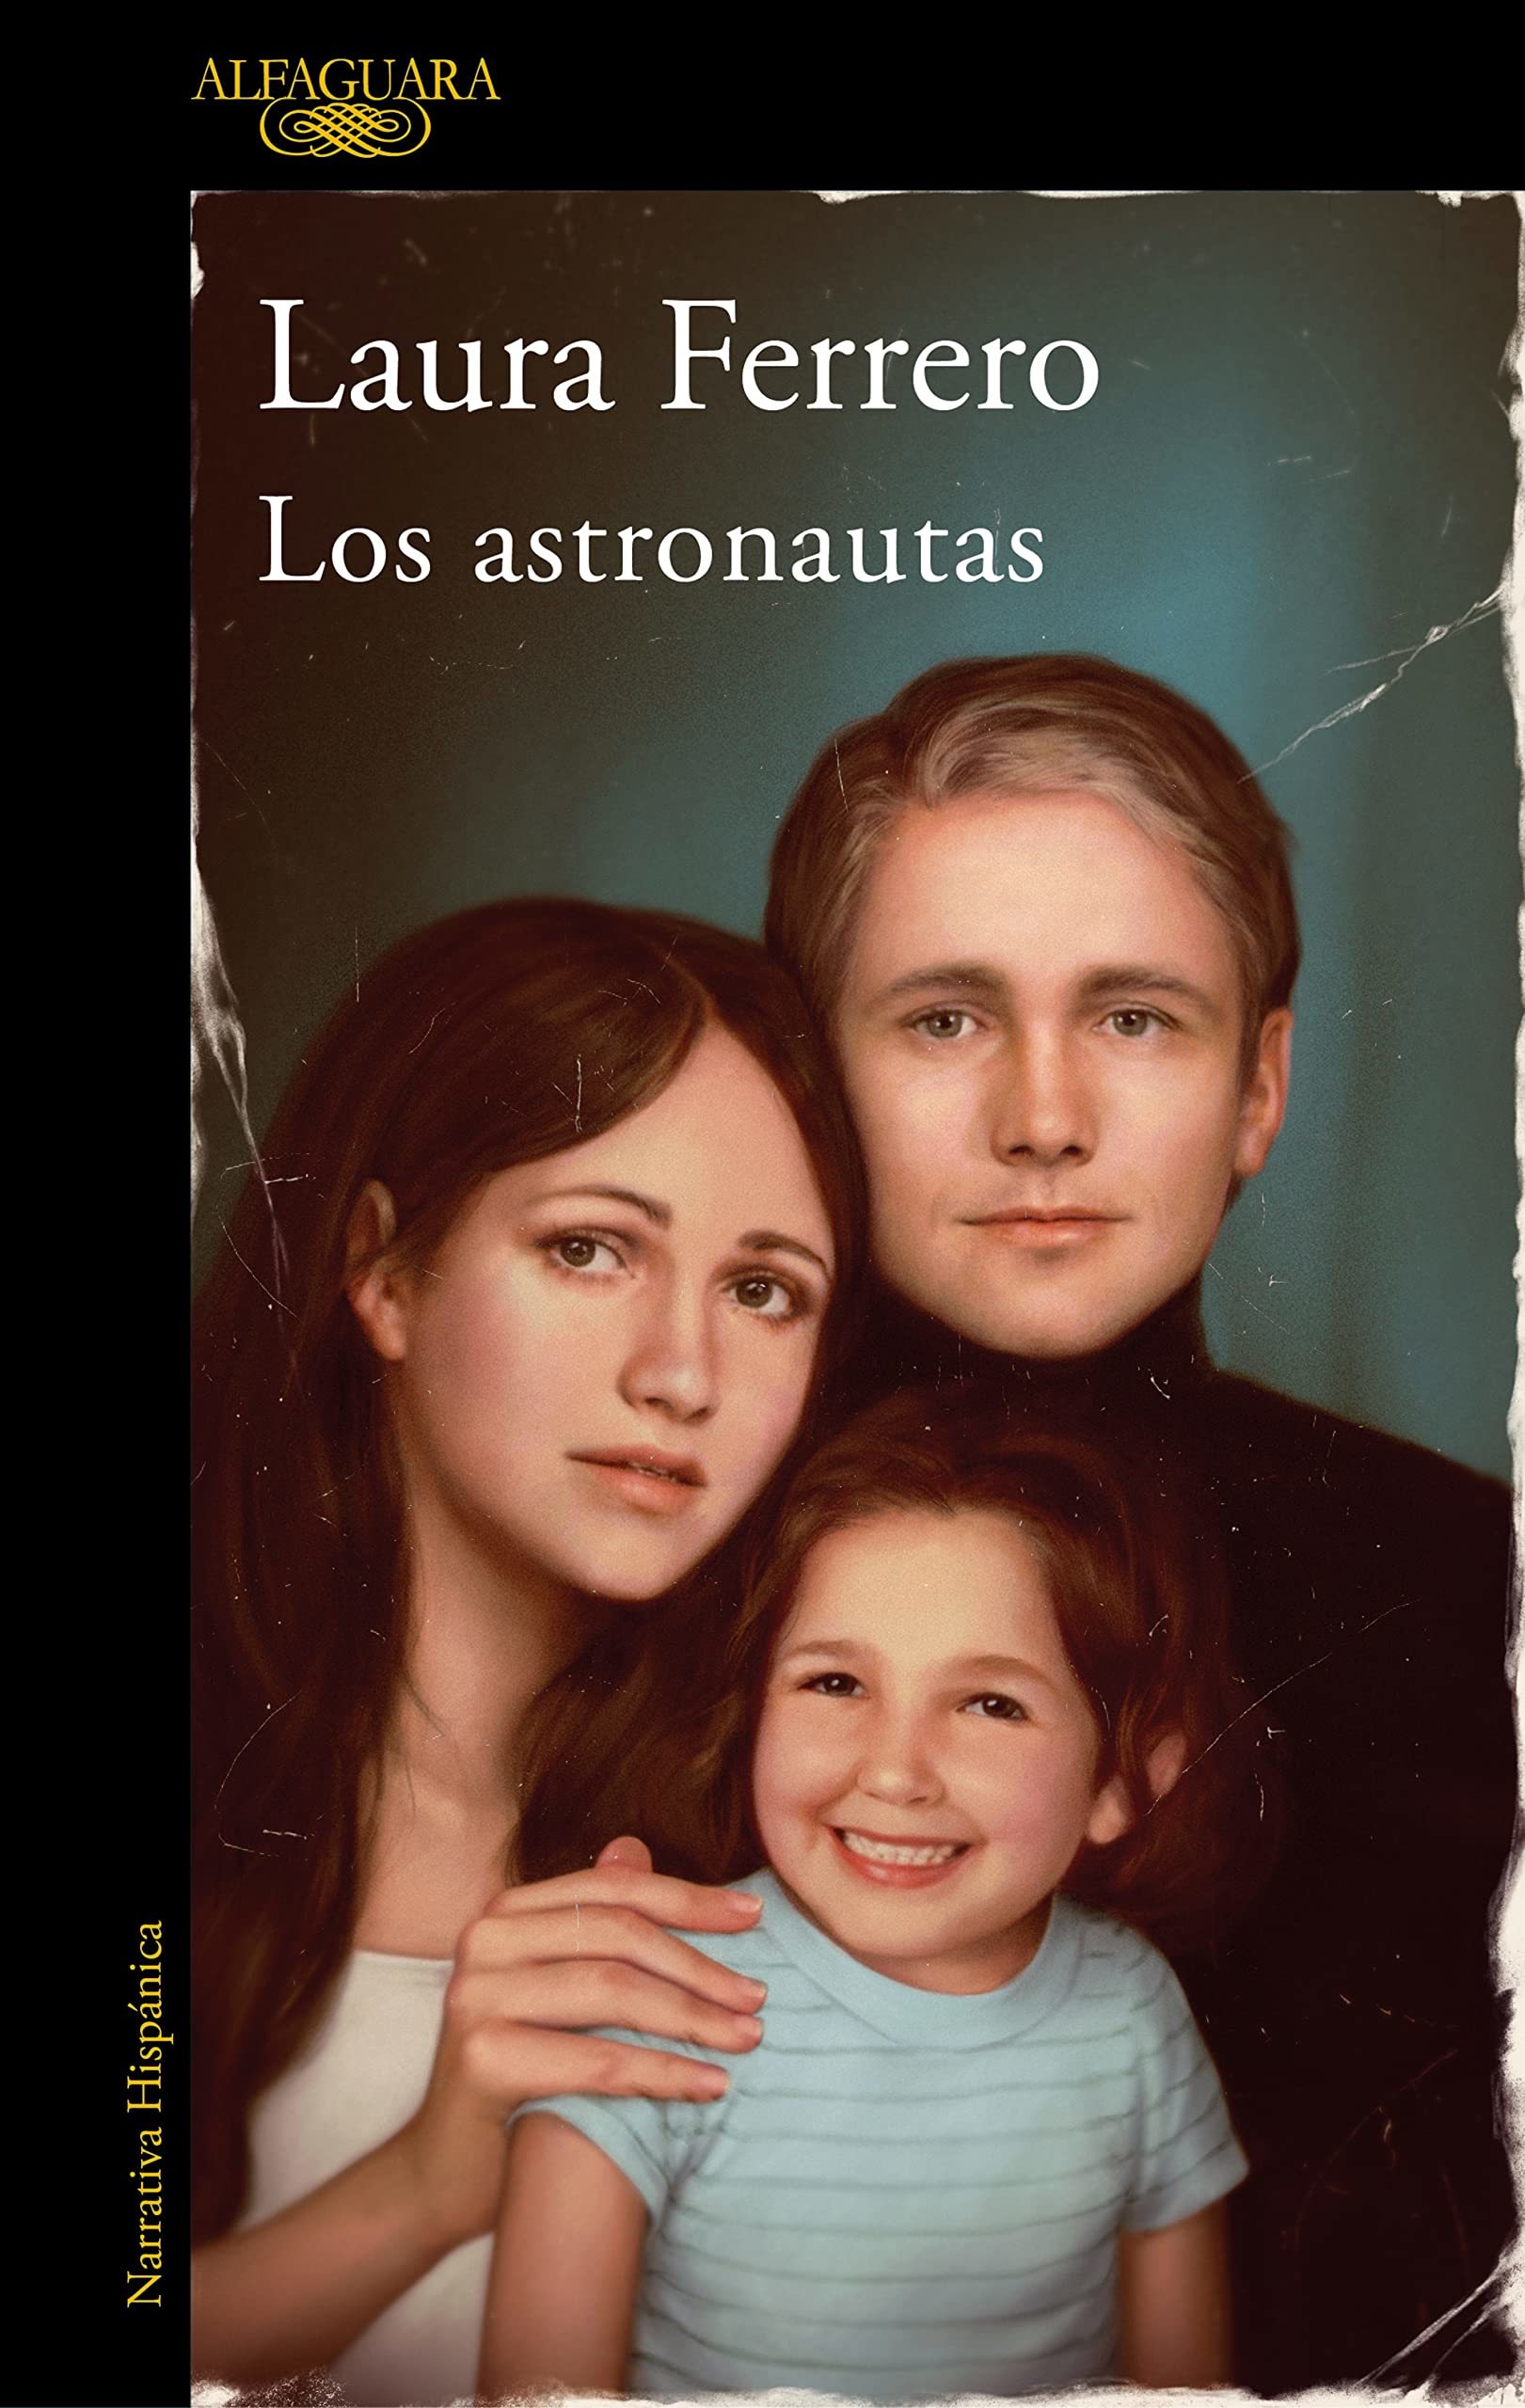 La novelas "Los astronautas" de Laura Ferrero sale a la venta el 30 de marzo.